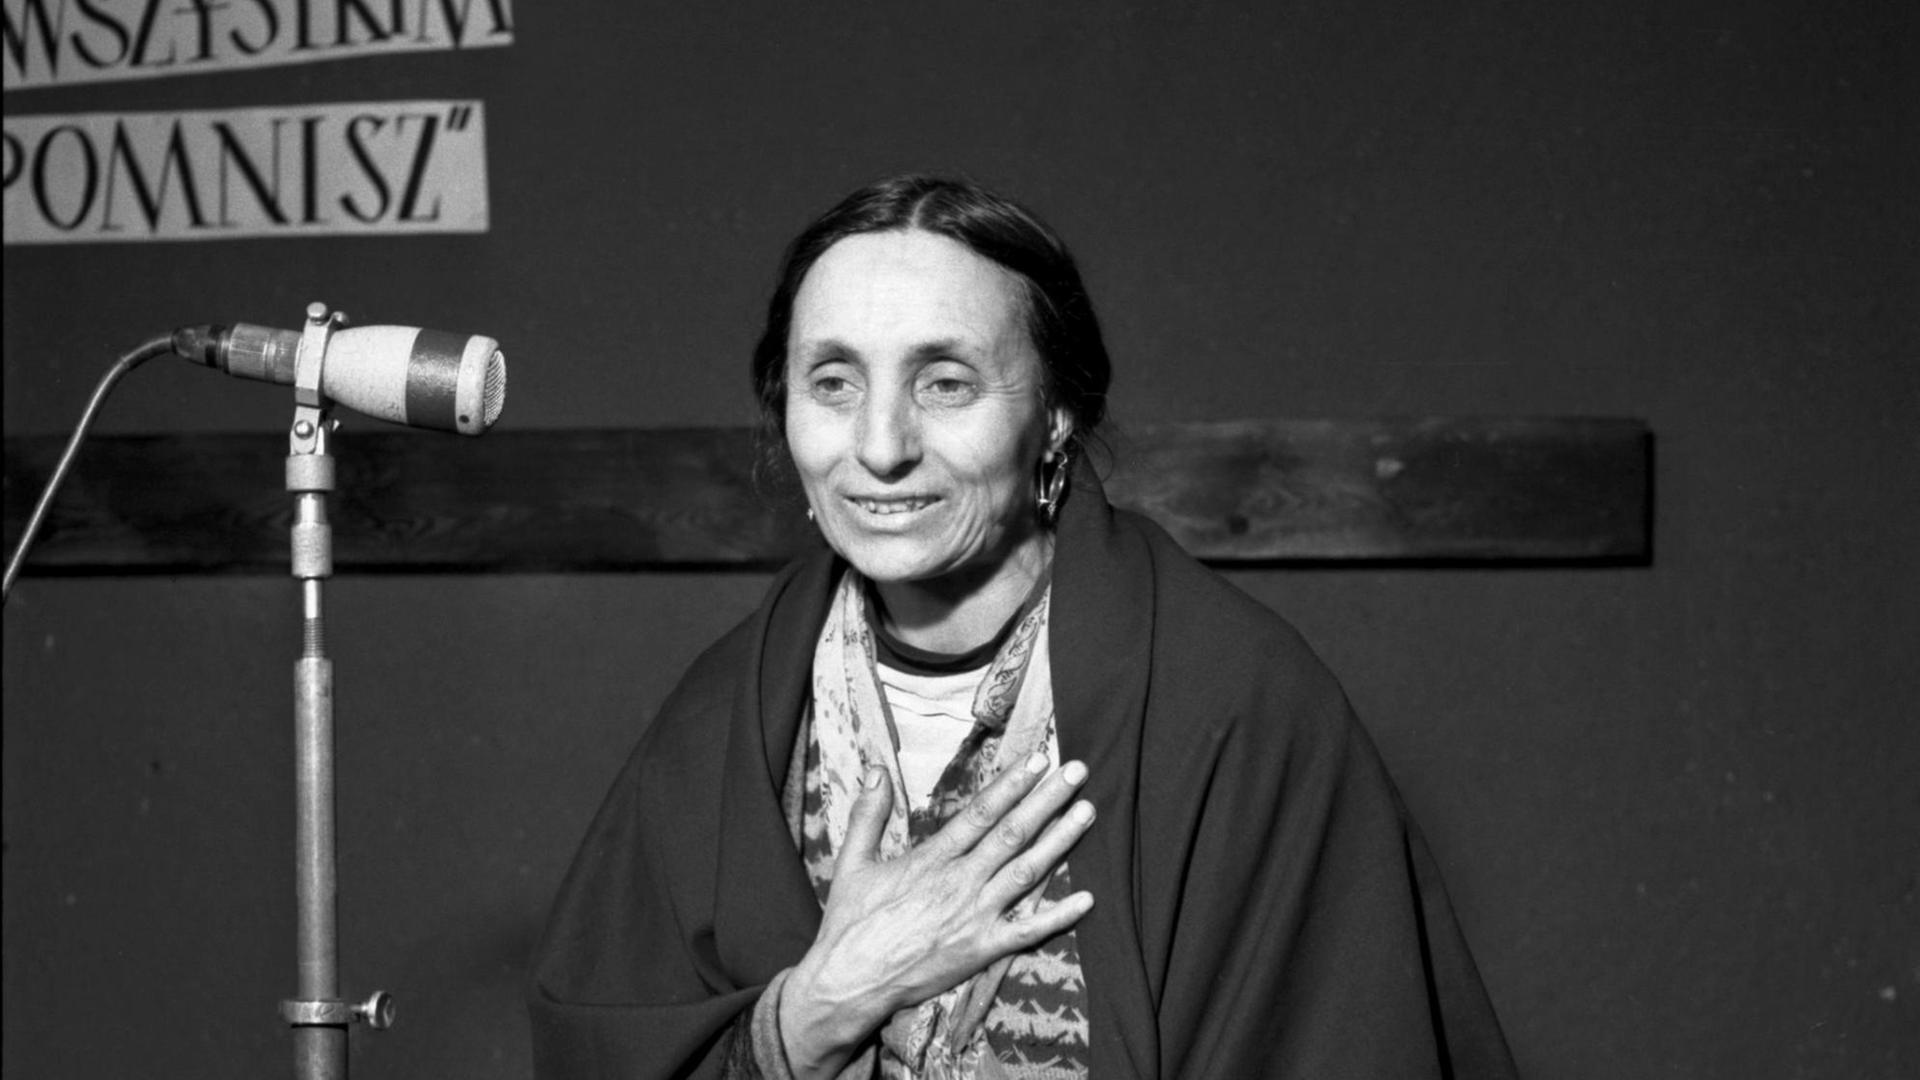 Historische Fotografie der polnischen Roma-Lyrikerin Bronisława Wajs, bekannt als Papusza, auf einer Bühne.